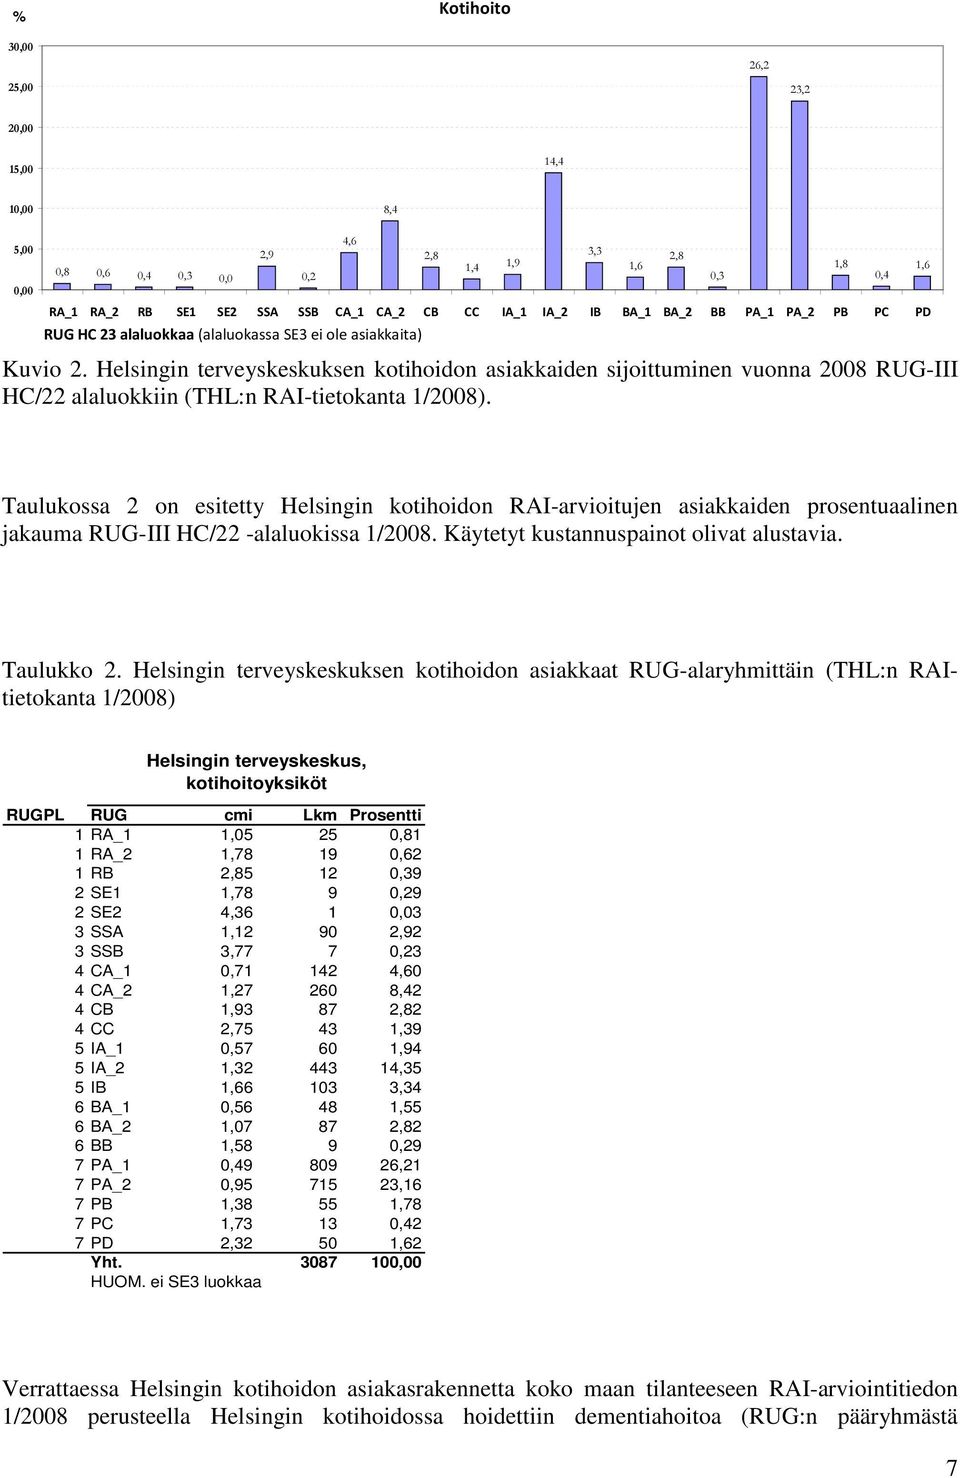 Helsingin terveyskeskuksen kotihoidon asiakkaiden sijoittuminen vuonna 2008 RUG-III HC/22 alaluokkiin (THL:n RAI-tietokanta 1/2008).